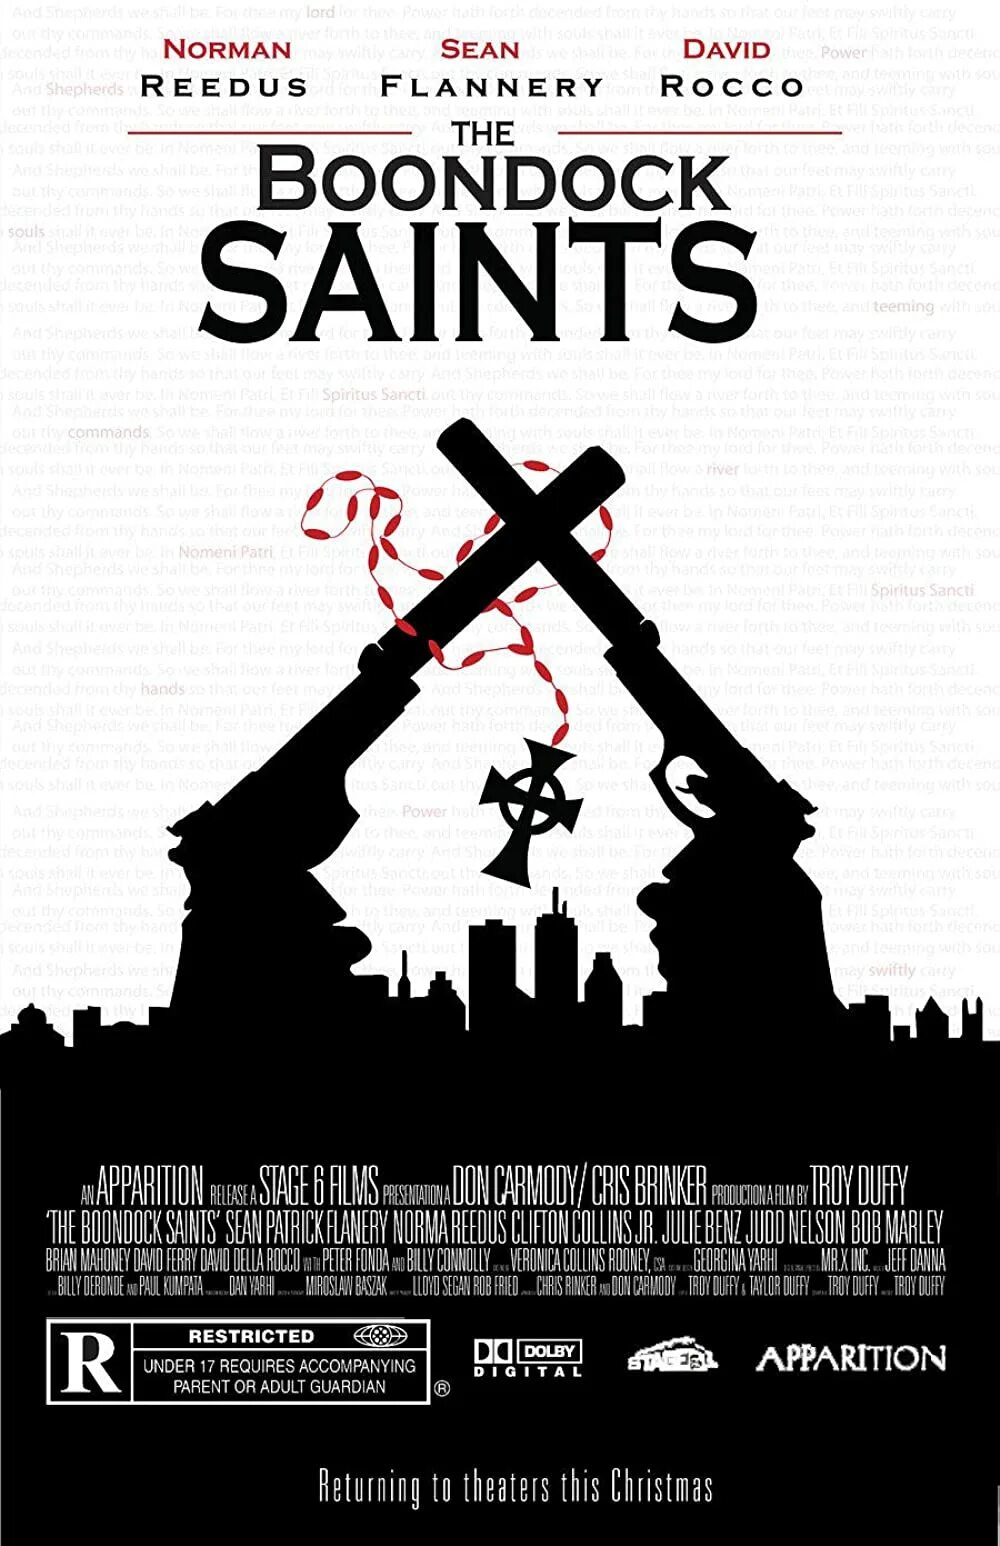 Святые из Бундока (1999). The Boondock Saints, 1999 poster. Святые из трущоб. Святые из трущоб перевод